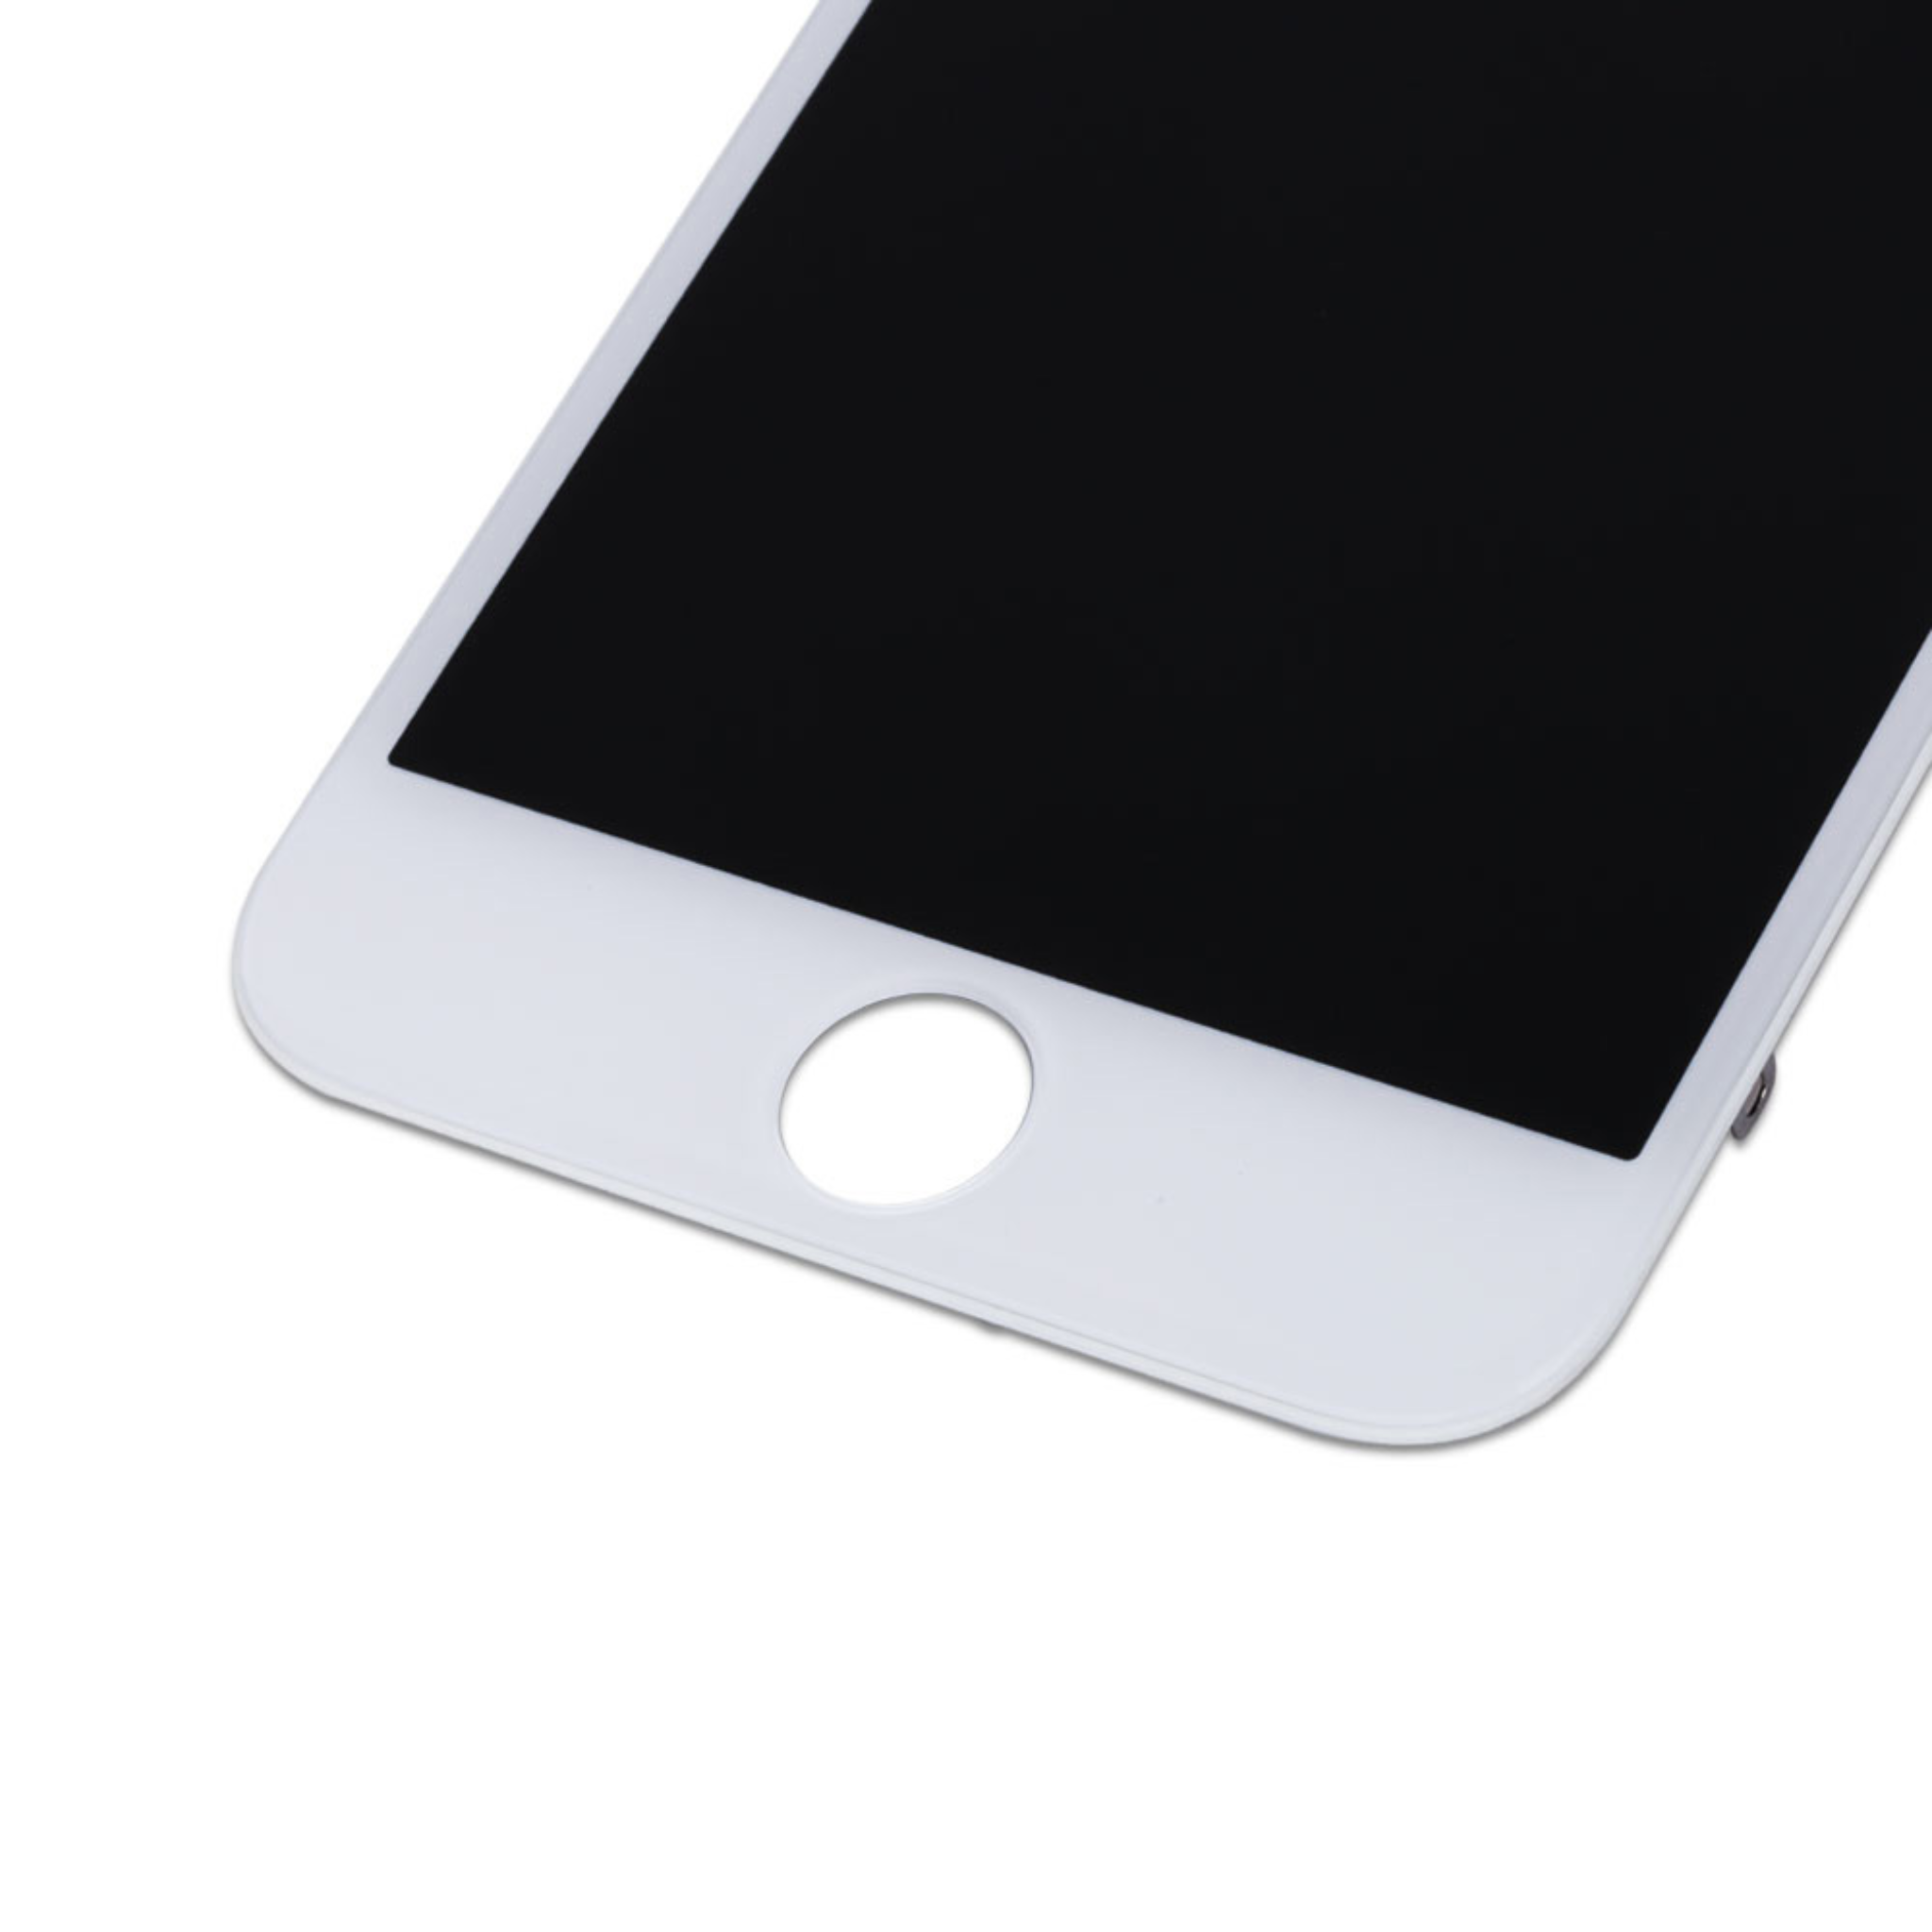 شاشة ايفون 6 بلس أبيض جودة عالية Redphone